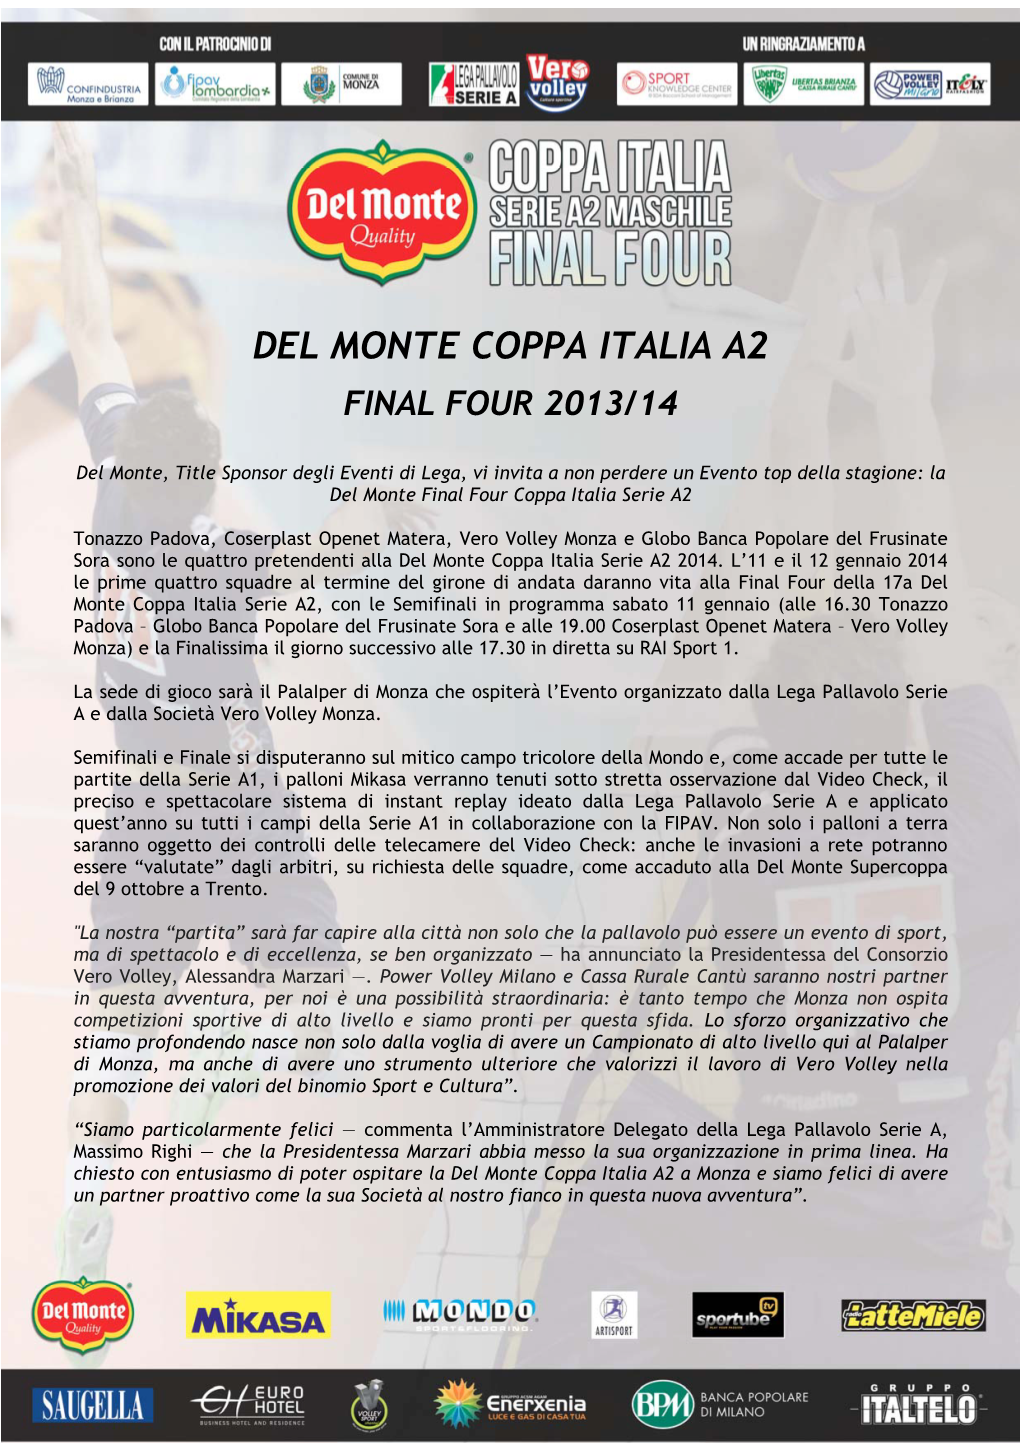 Del Monte Coppa Italia A2